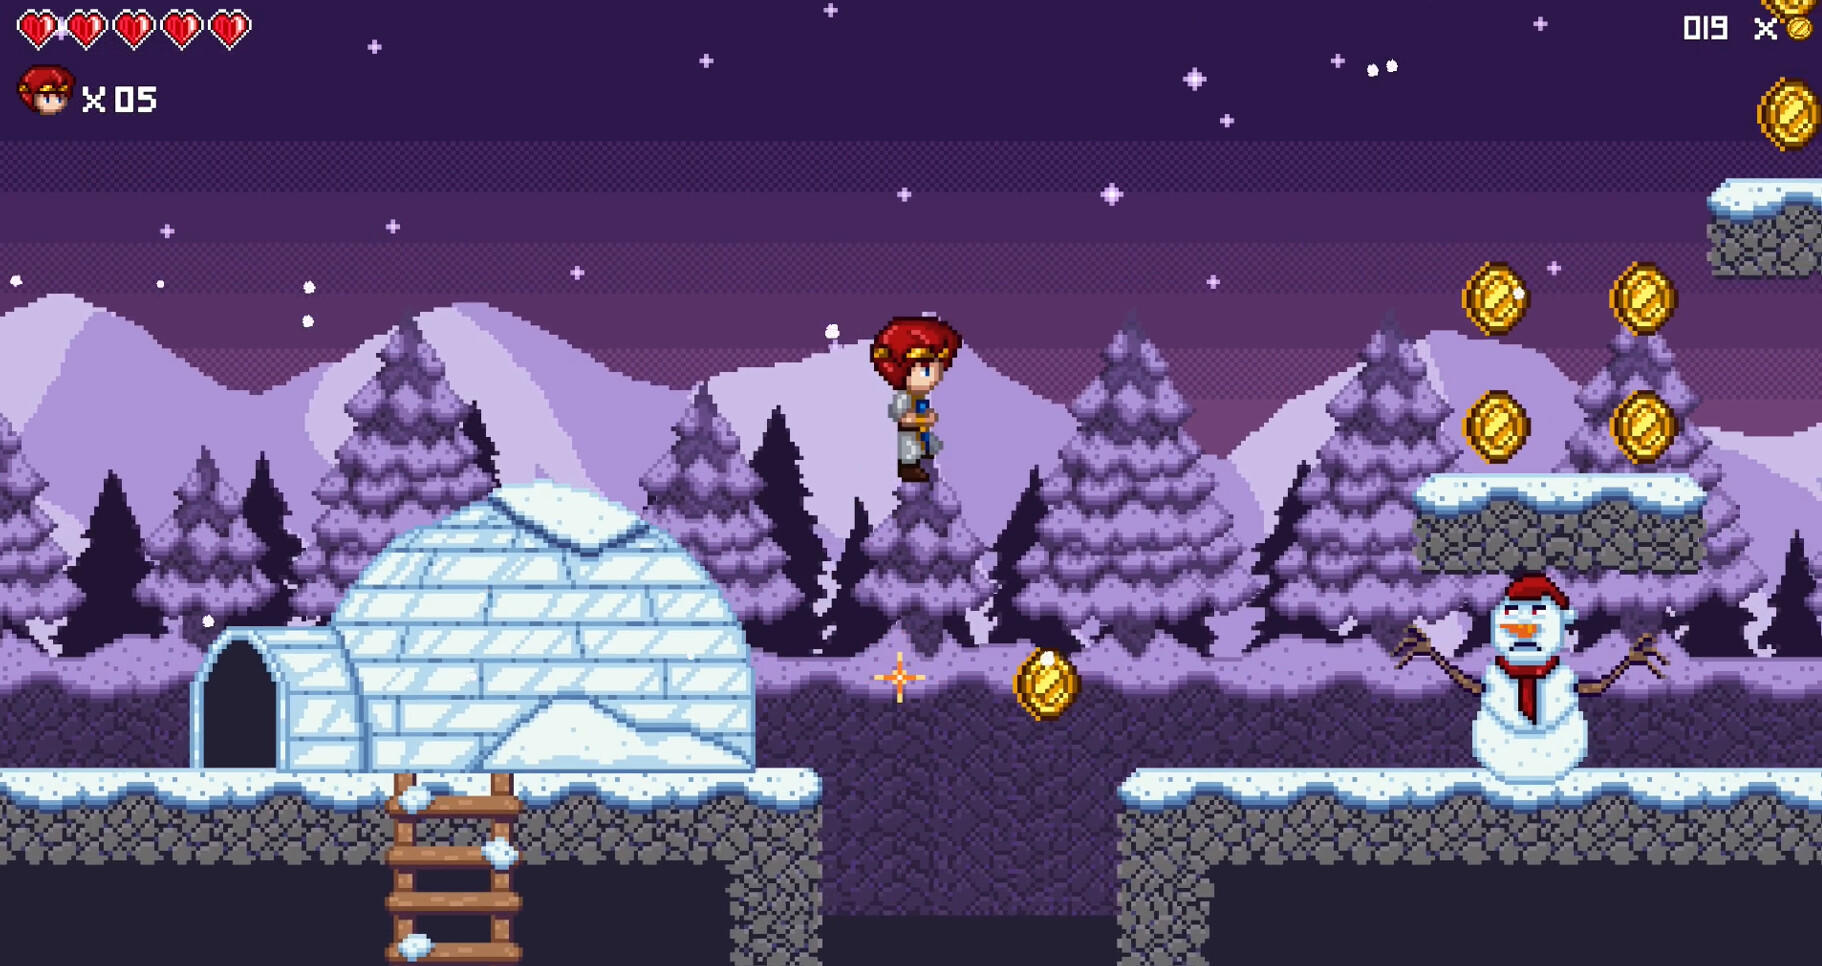 Screenshot 1 of Kepala Merah - Untuk Menyelamatkan 